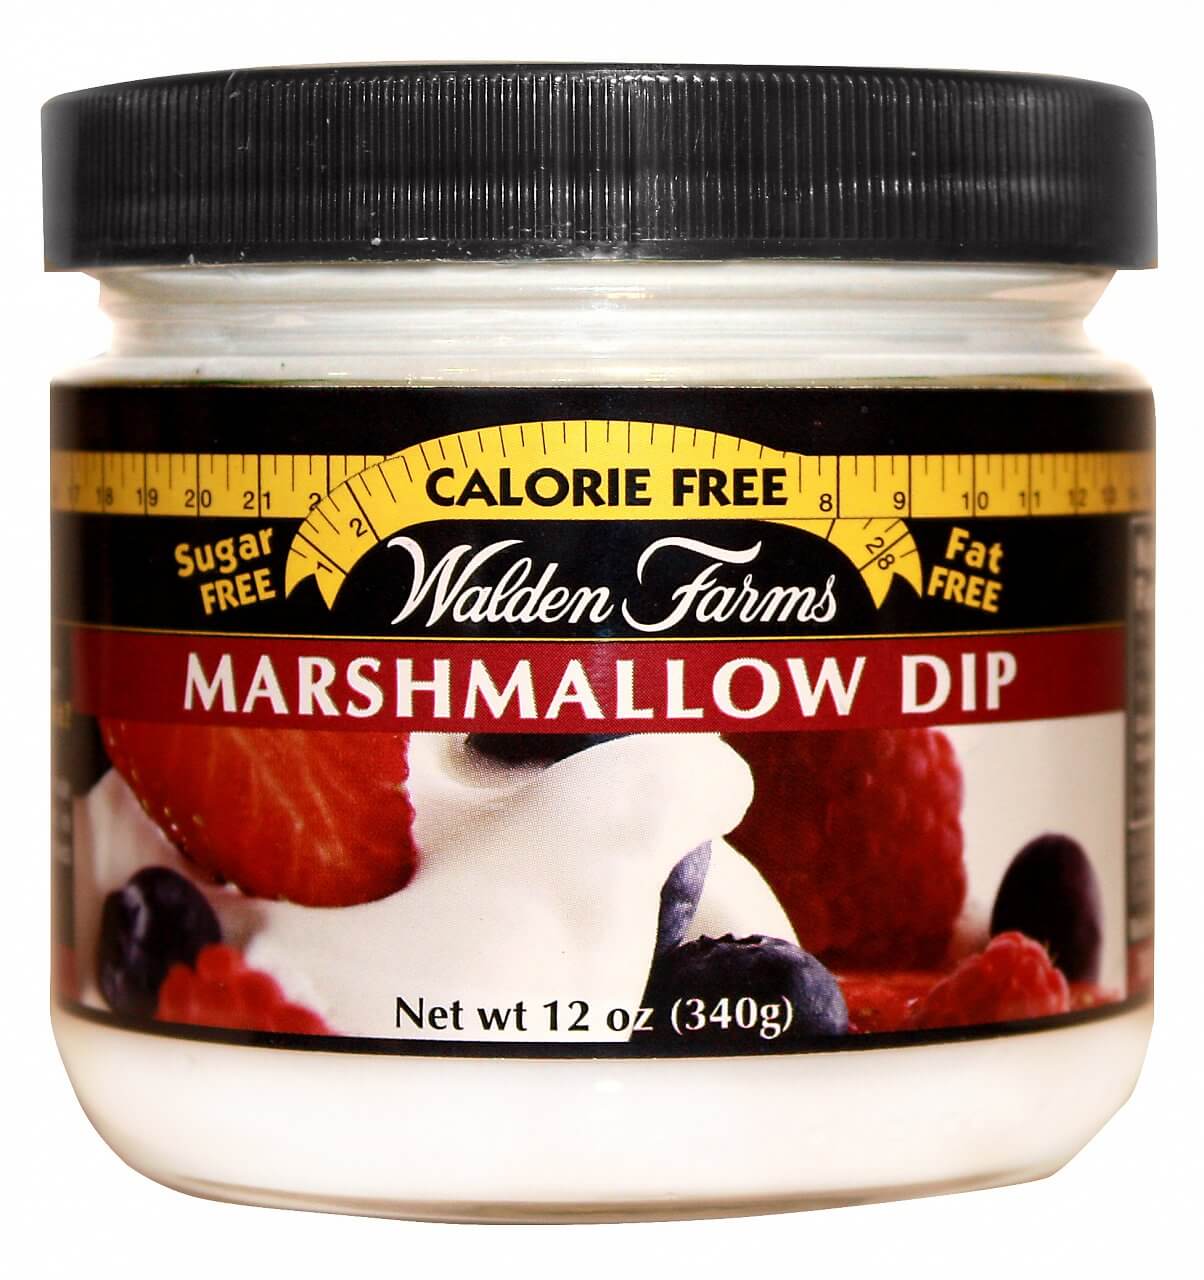 Zdravé potraviny Walden Farms Marshmallow Dip, 340g